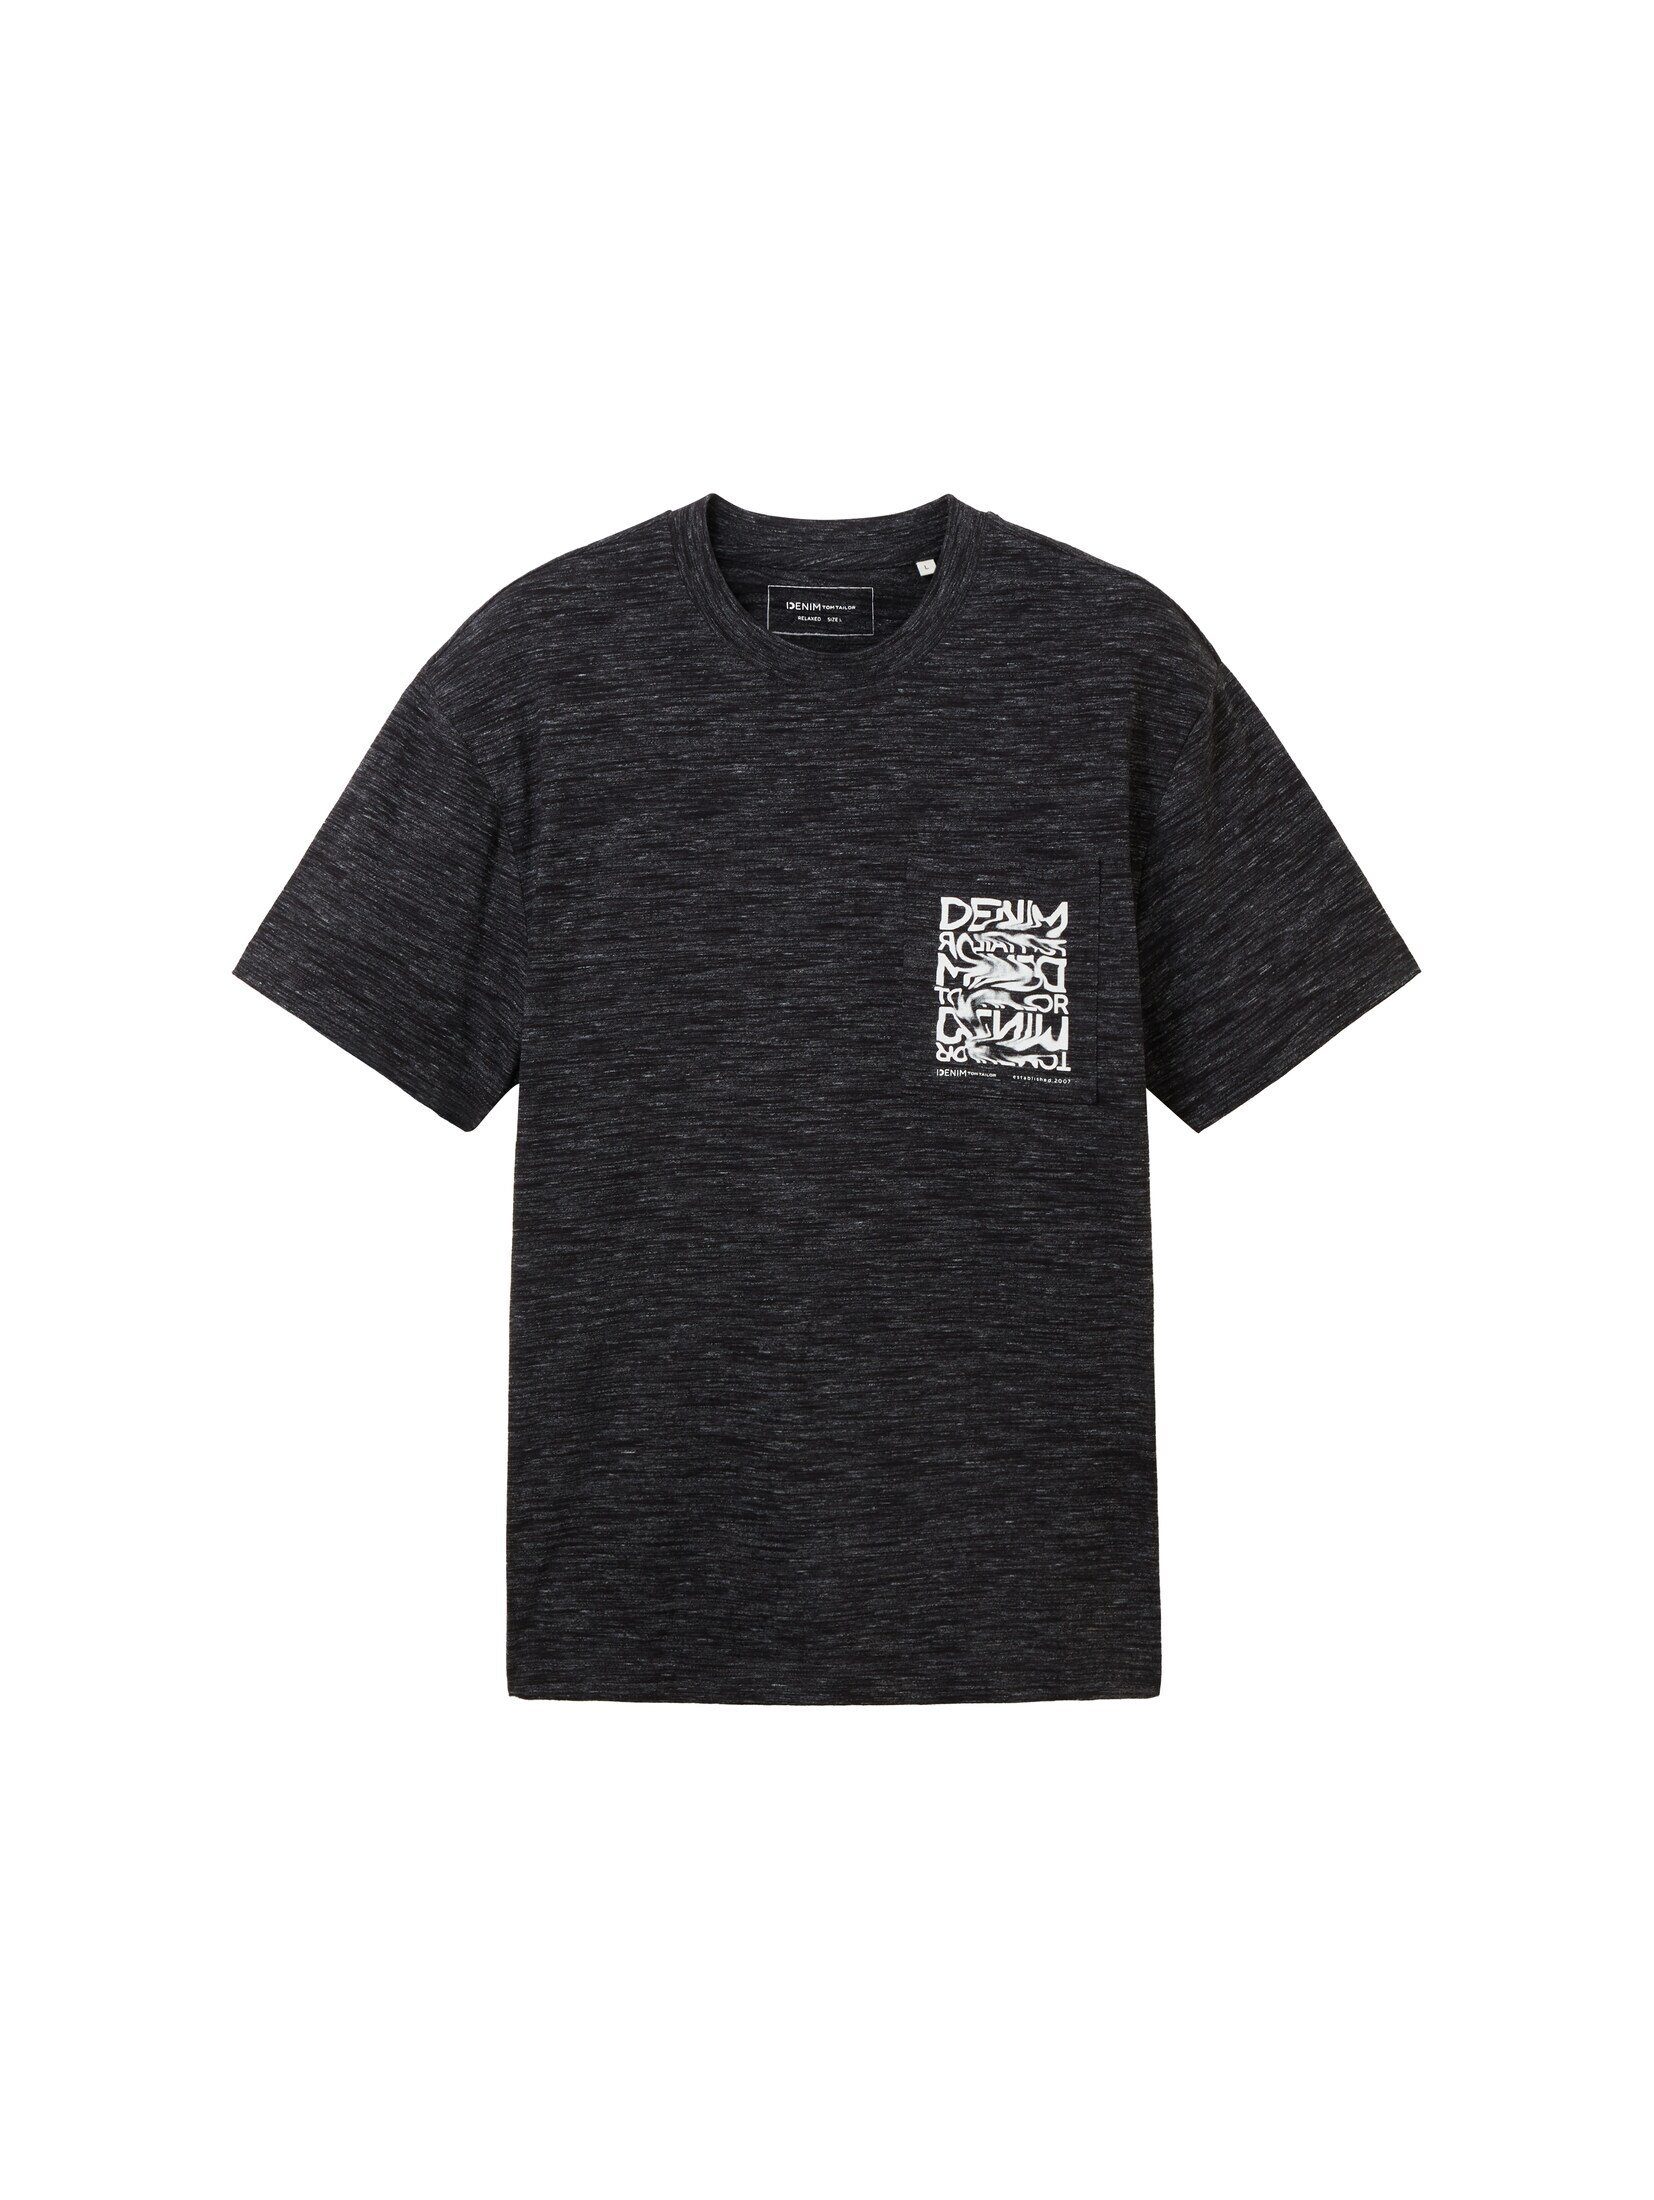 in Denim black space TAILOR TOM Optik Melange T-Shirt new T-Shirt dye